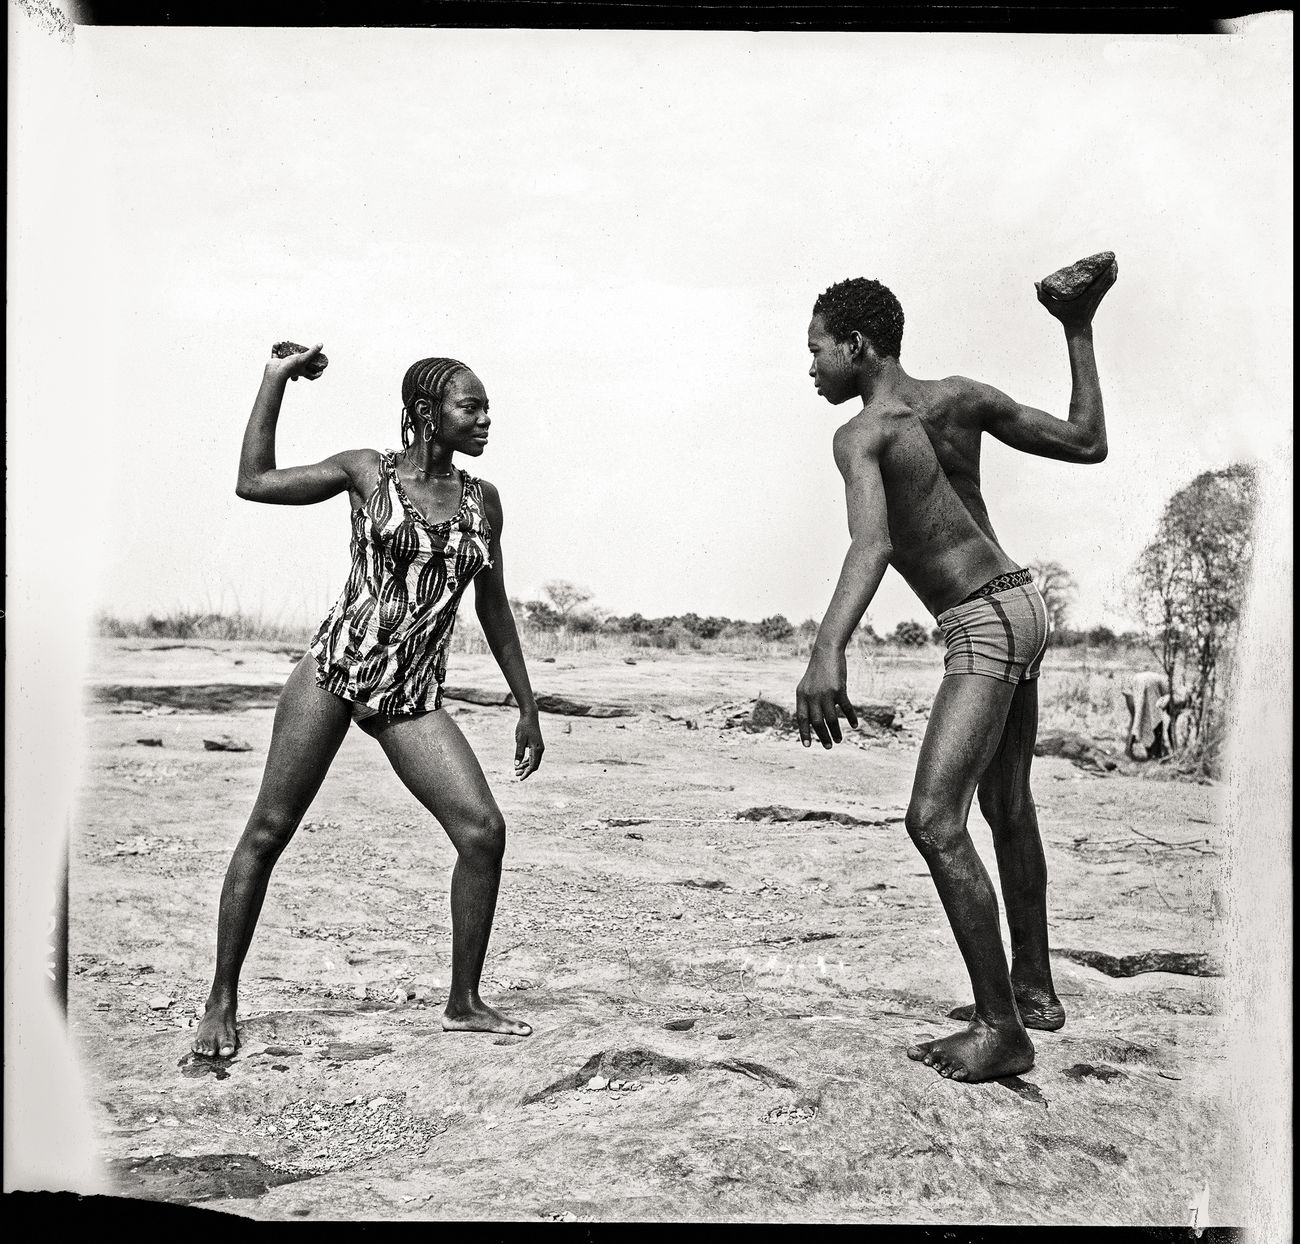 Malick Sidibé, Combat des amis avec pierres au bord du Niger, 1976. Collection Fondation Cartier pour l’art contemporain, Paris © Malick Sidibé